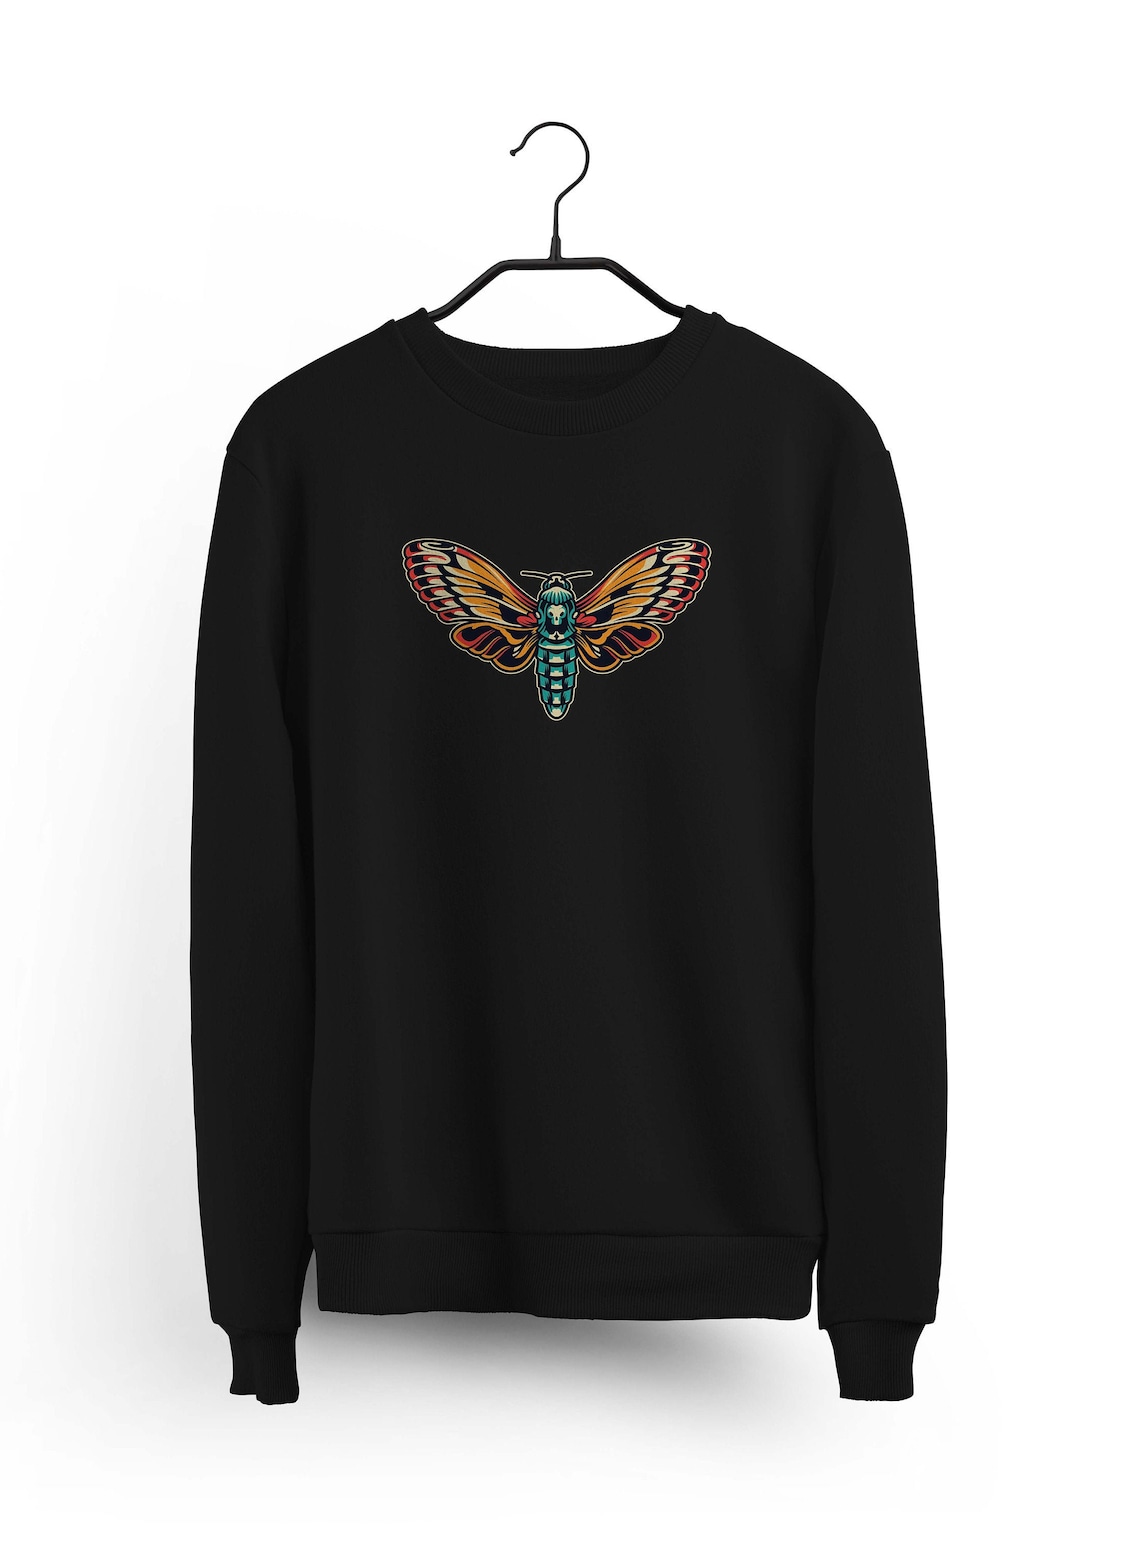 Butterfly Sweatshirt Butterfly Sweater Unisex Jumper Women | Etsy